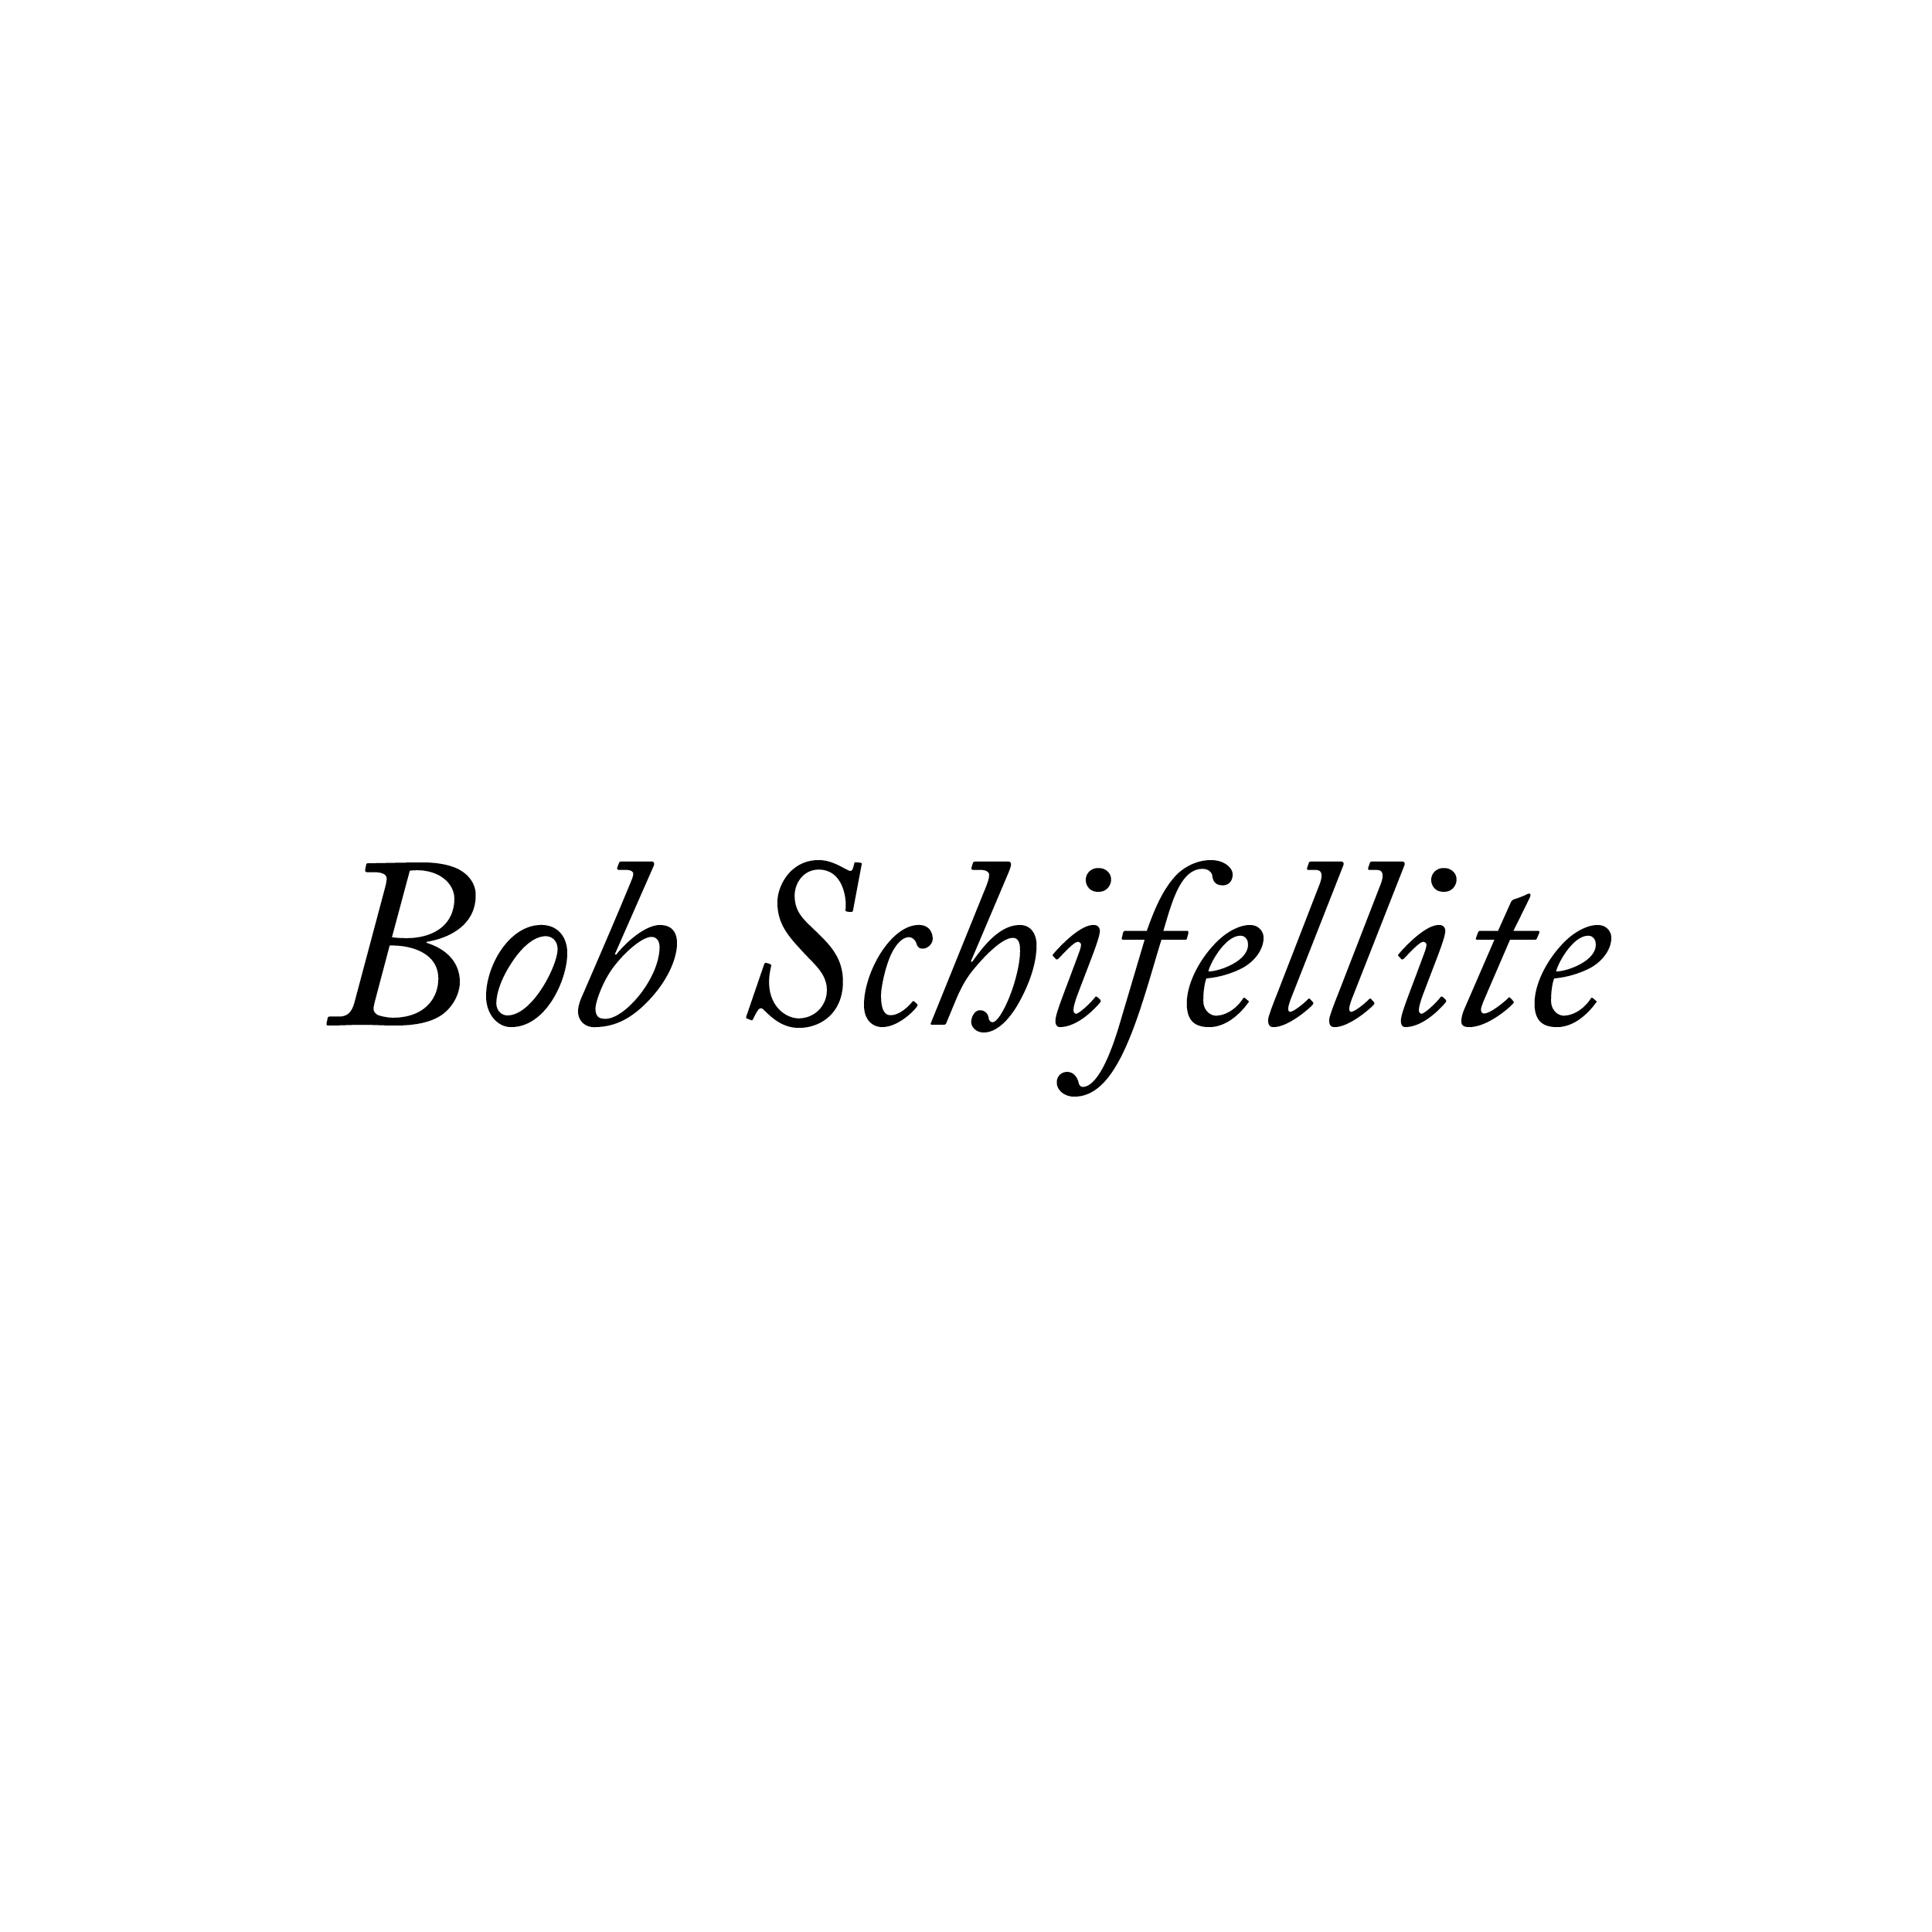 Bob Schifellite